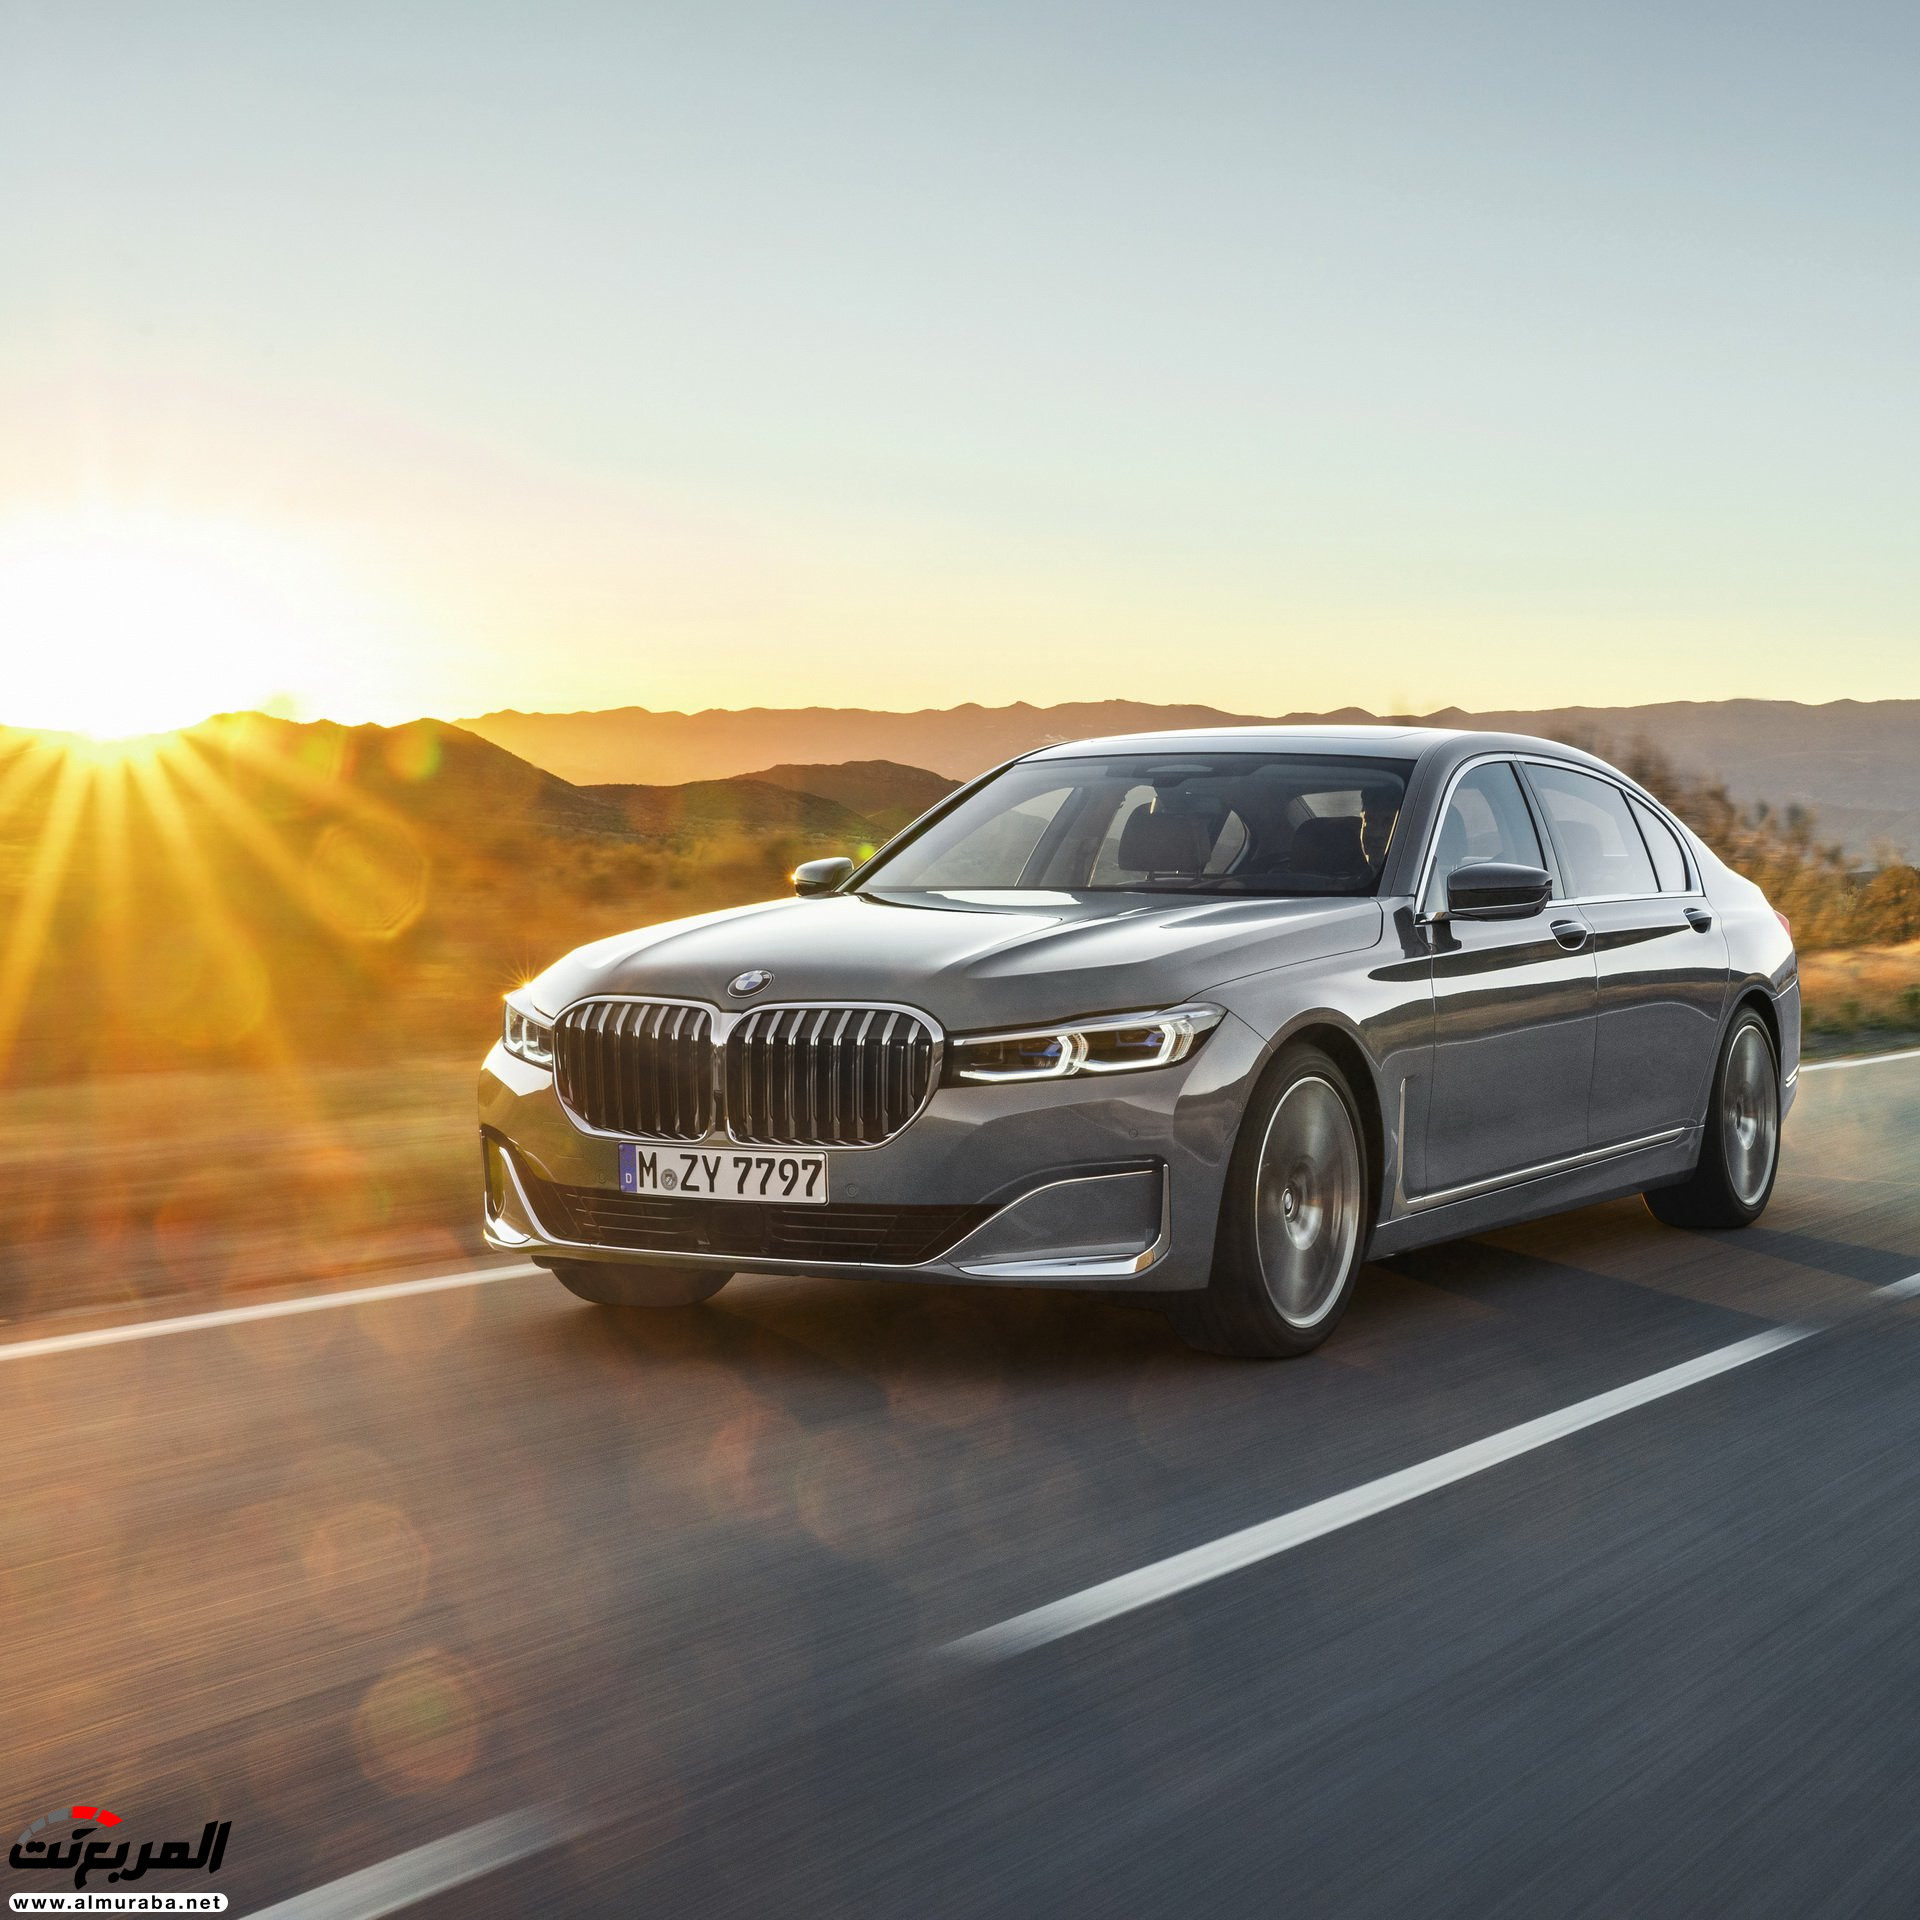 بي ام دبليو الفئة السابعة 2020 المحدثة تكشف نفسها رسمياً "صور ومواصفات" BMW 7 Series 220